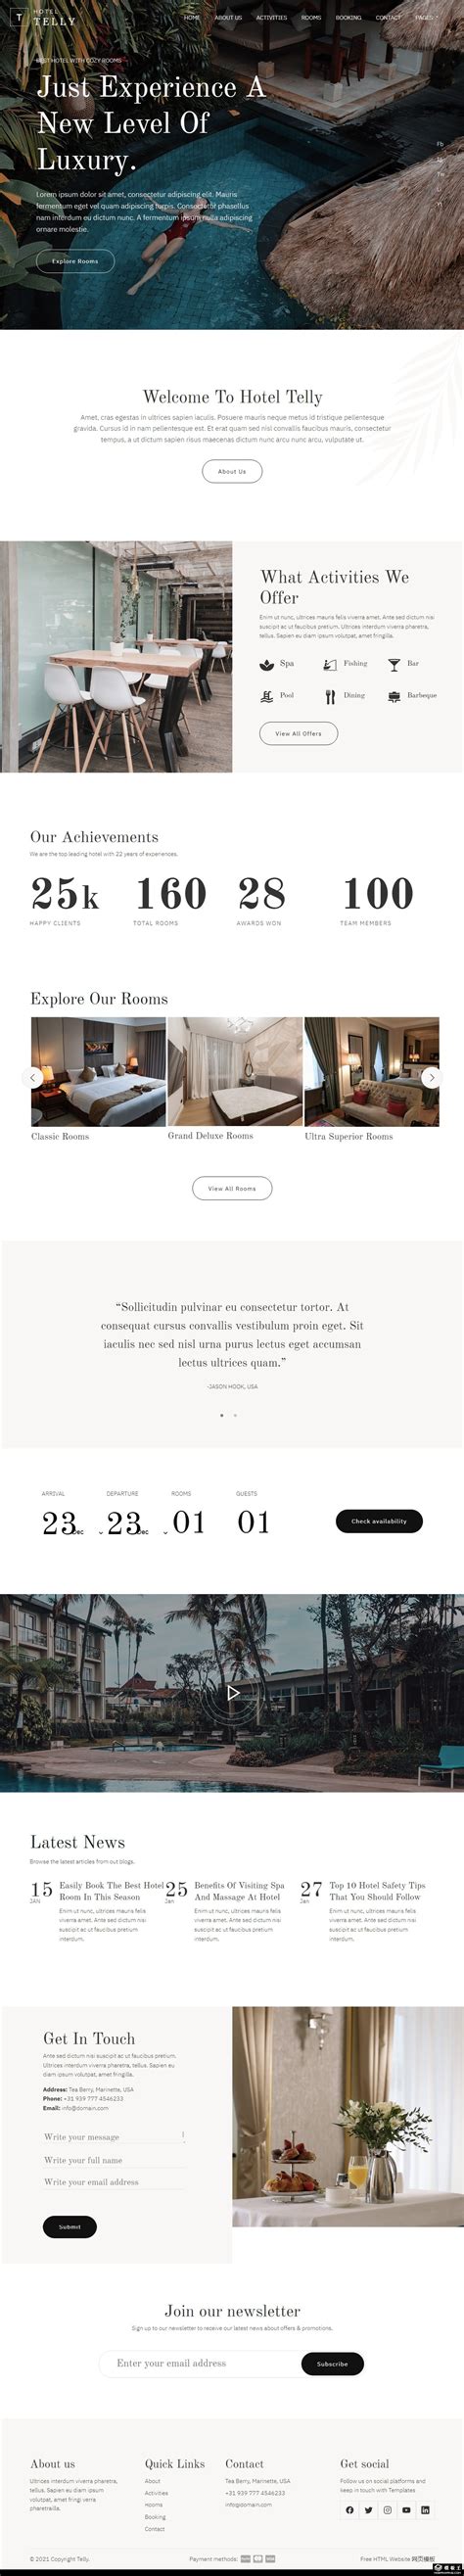 豪华海景酒店网站模板免费下载html - 模板王